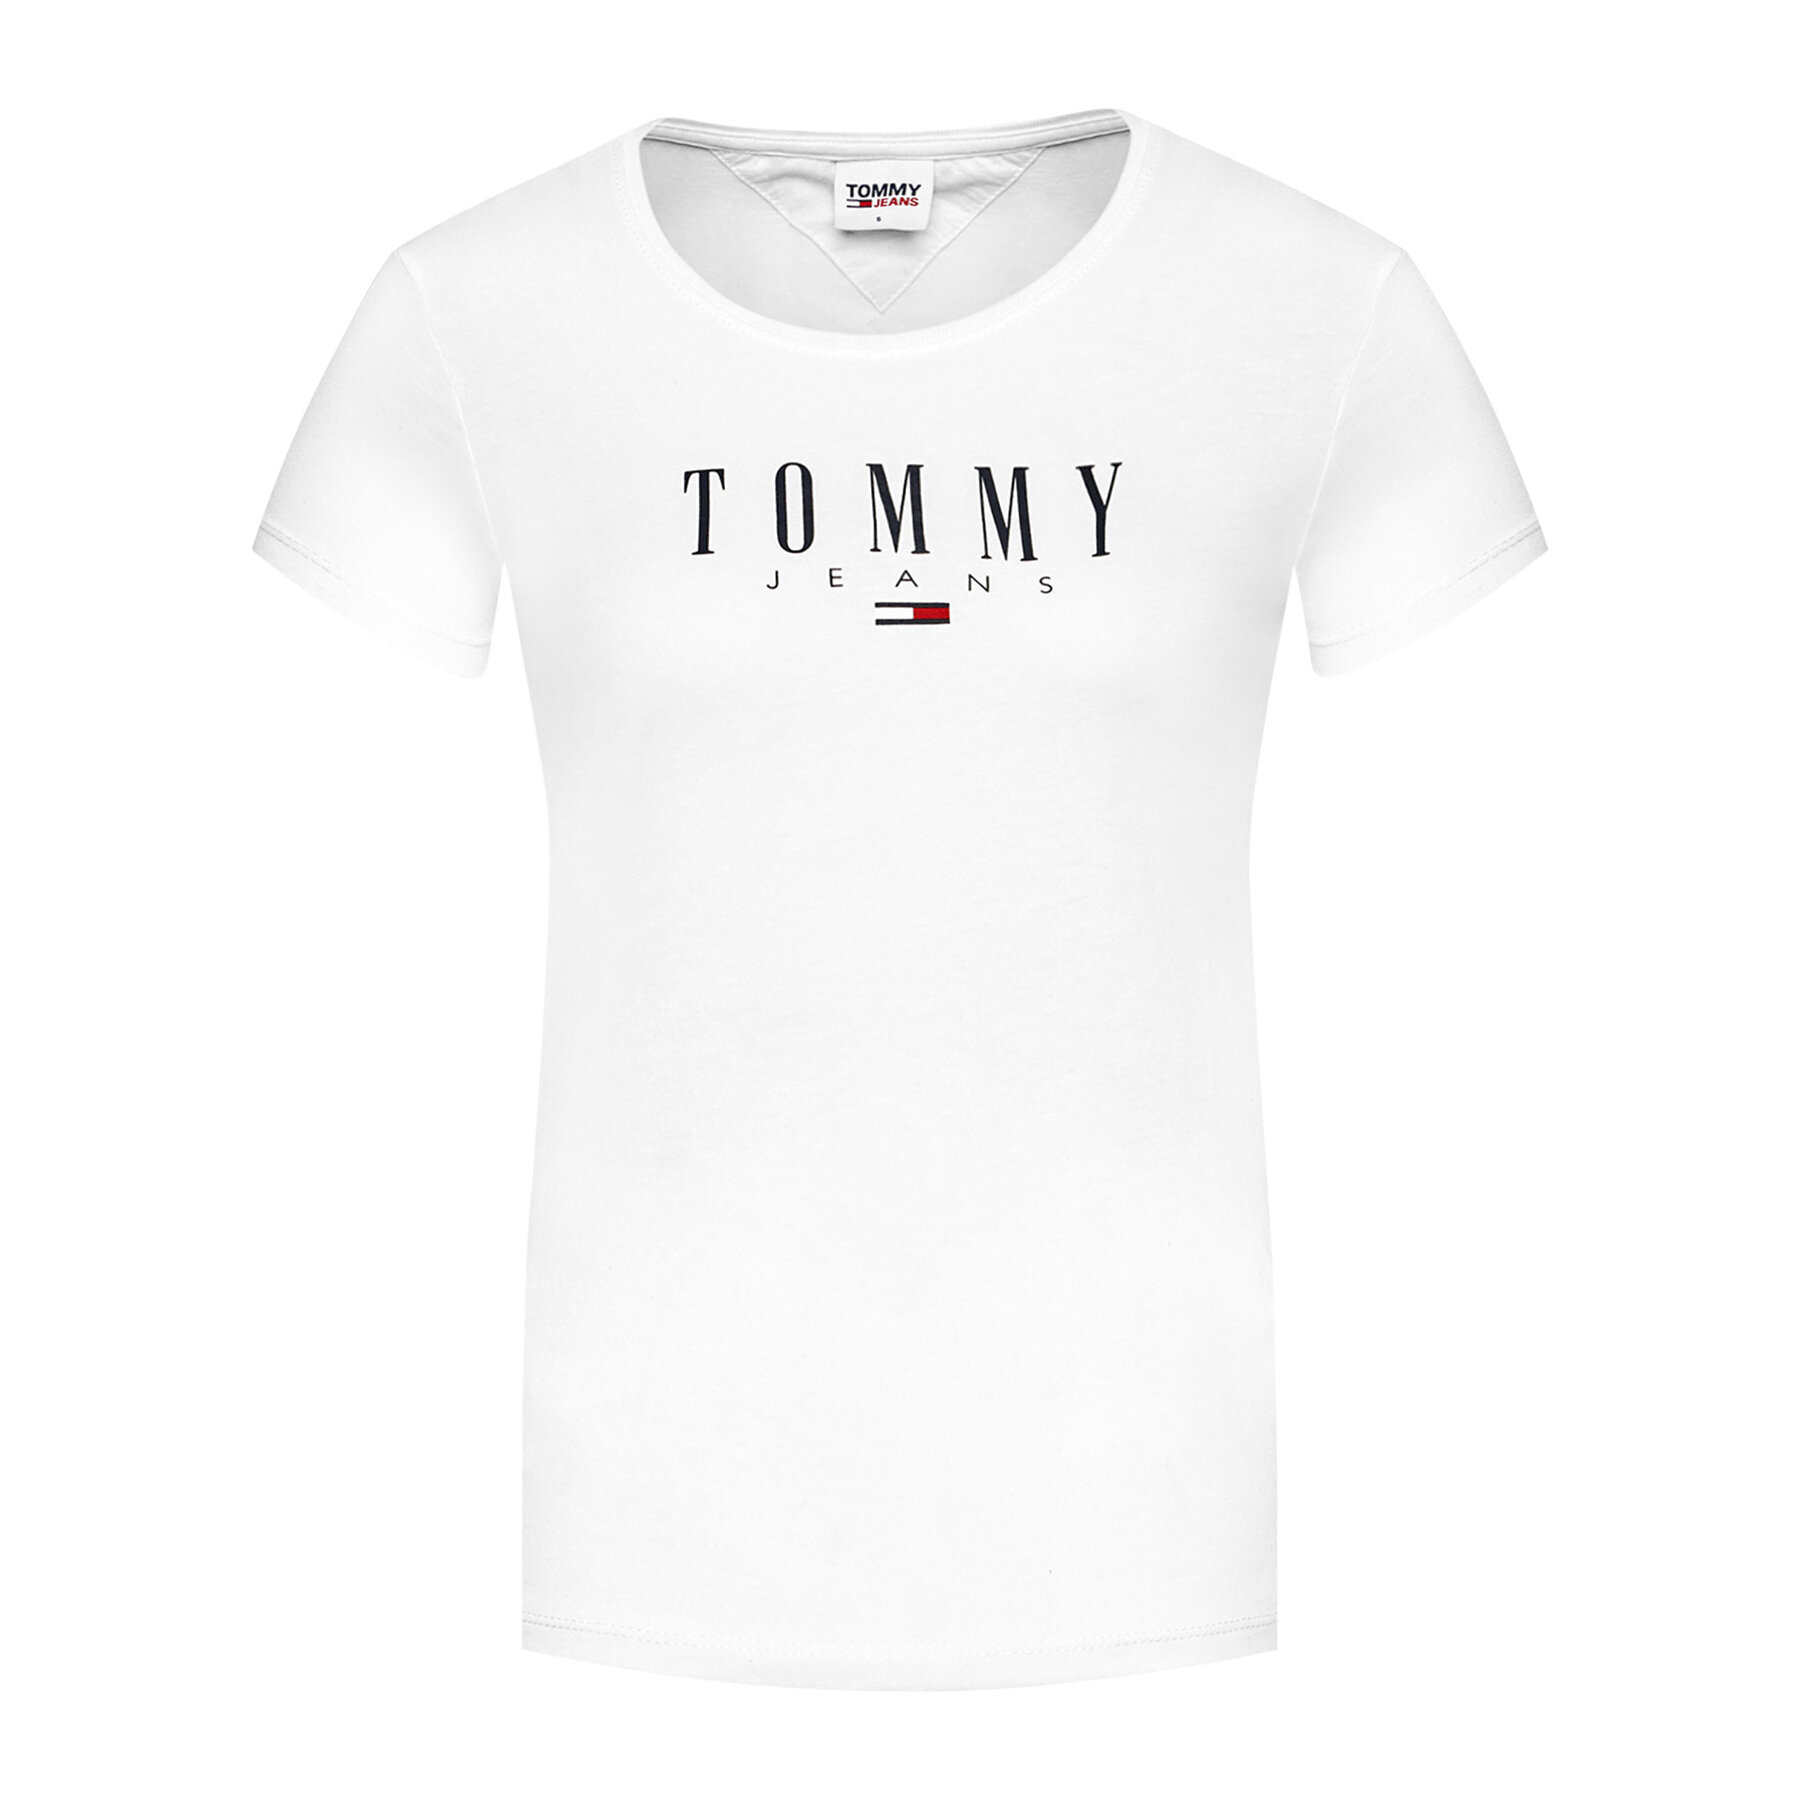 Dámske tričko s nápisom Tommy Jeans - biela